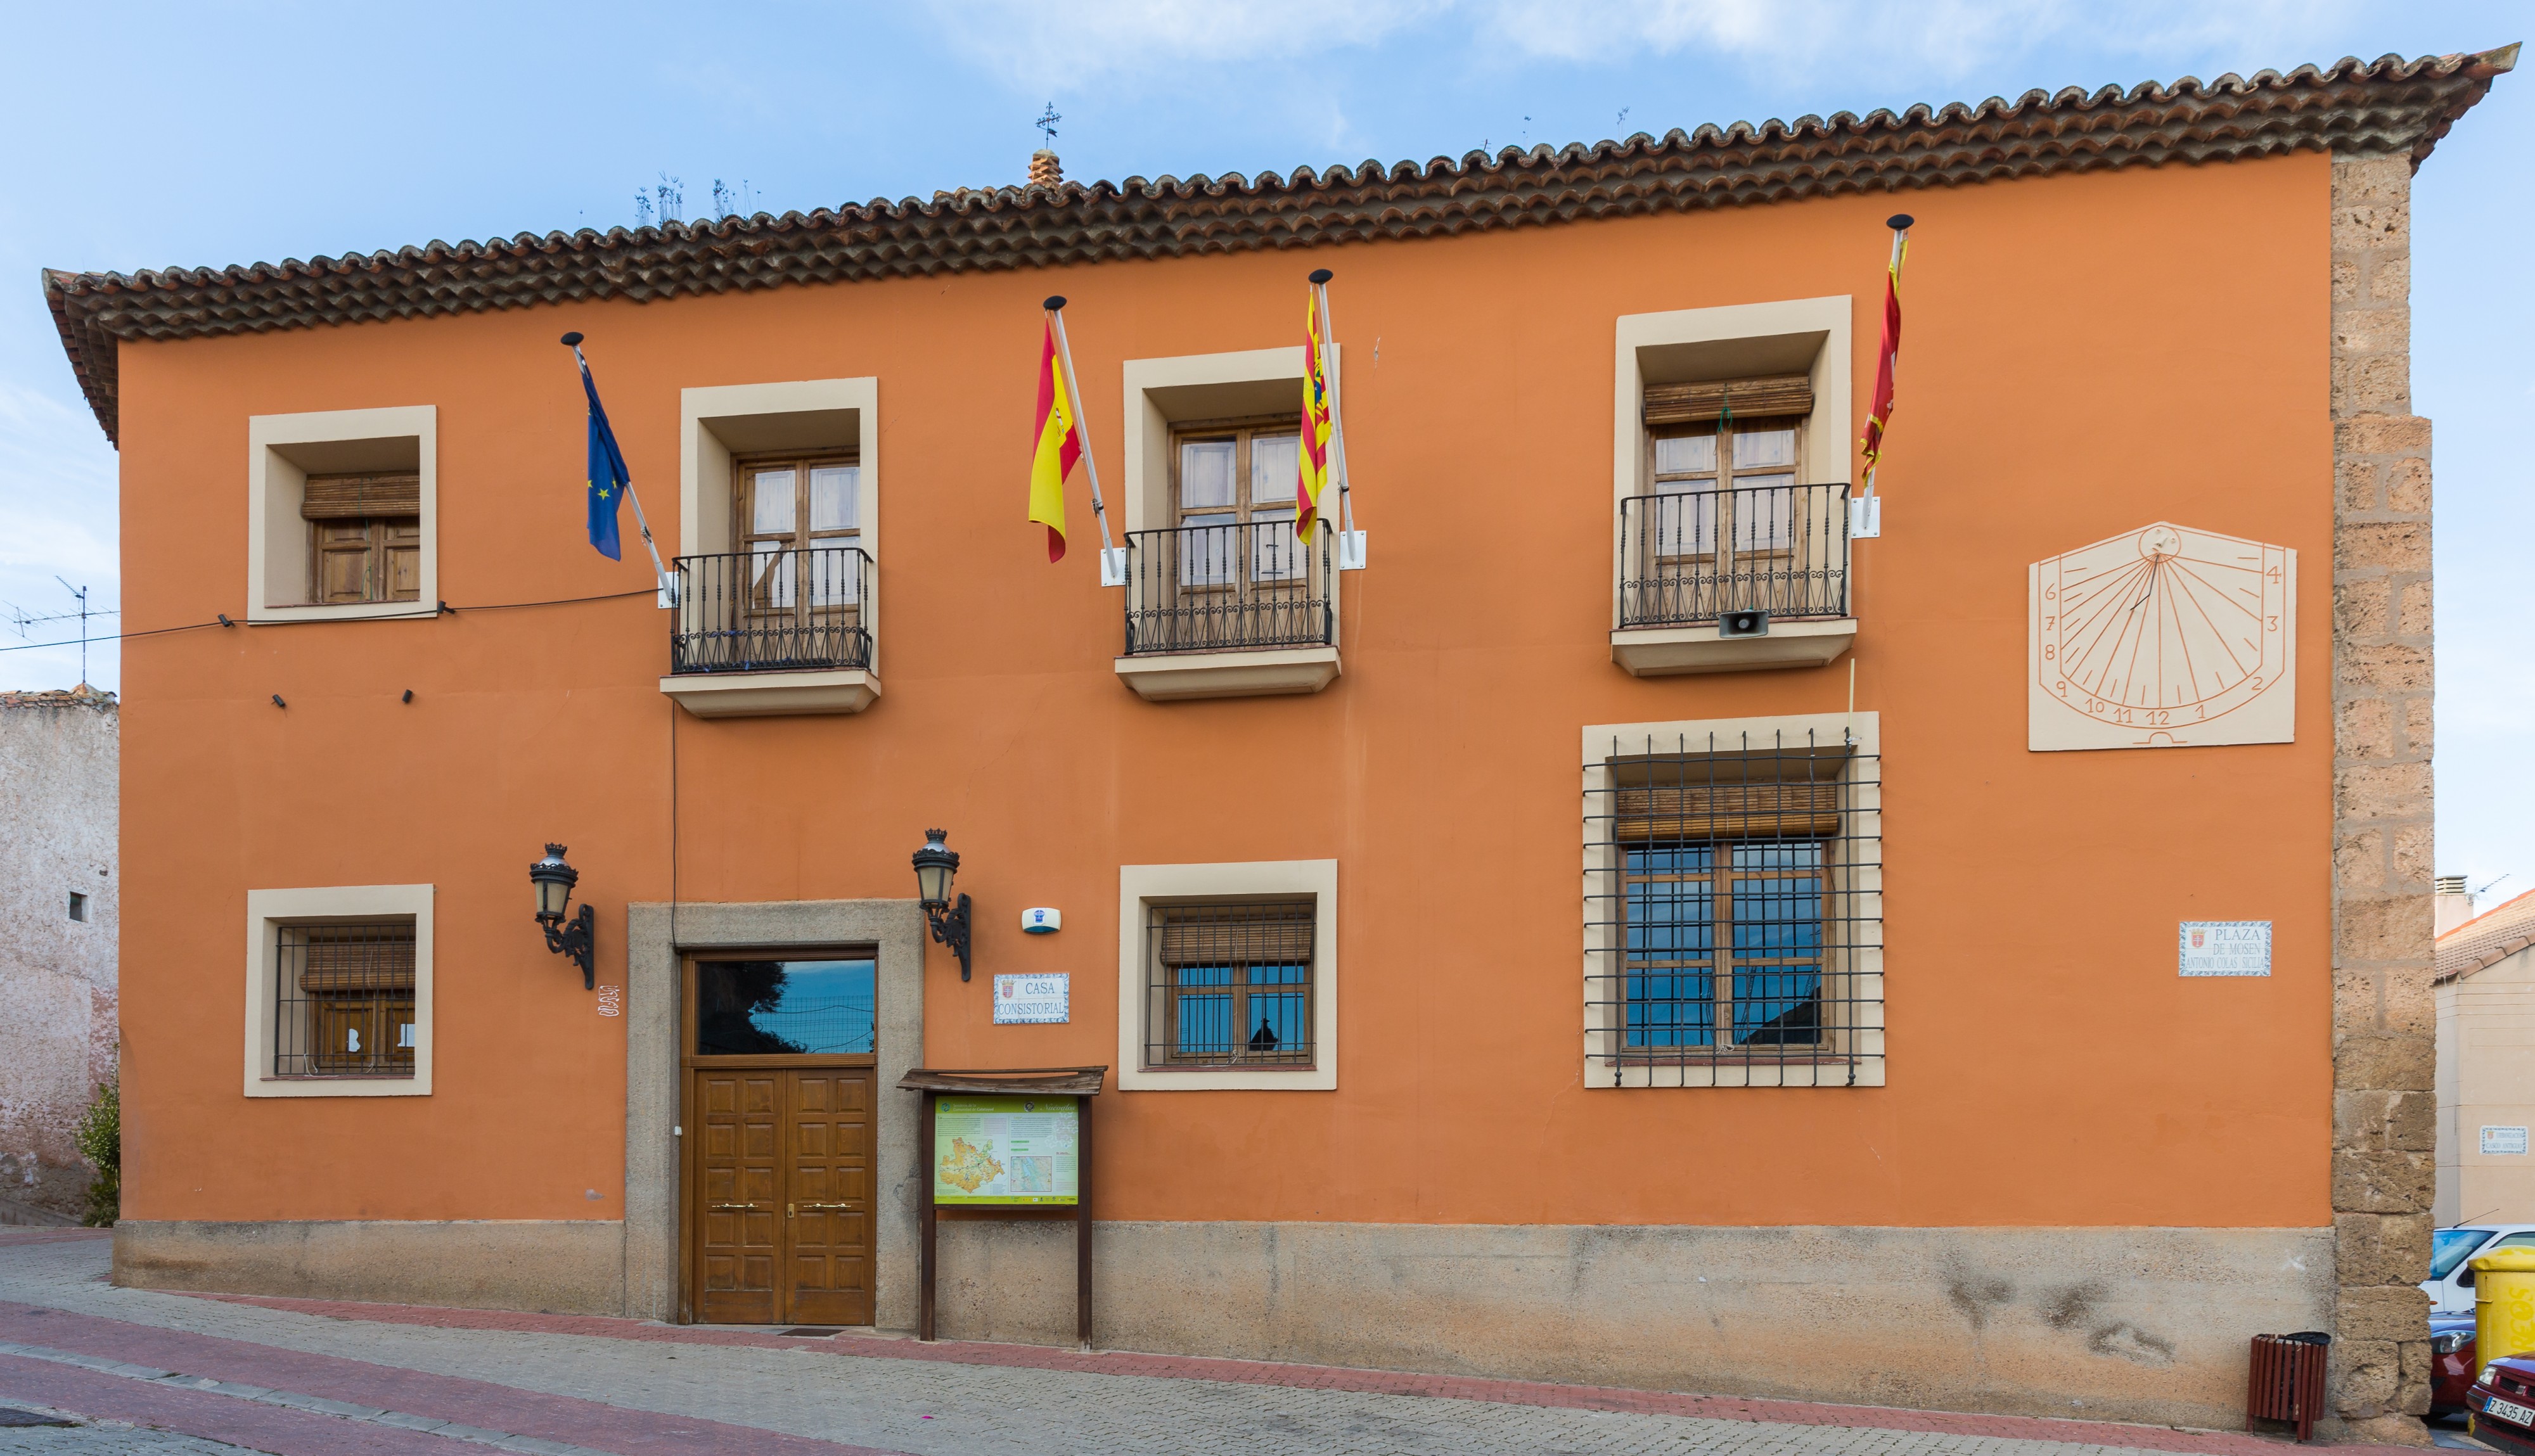 Ayuntamiento, Nuévalos, Zaragoza, España, 2015-01-08, DD 04